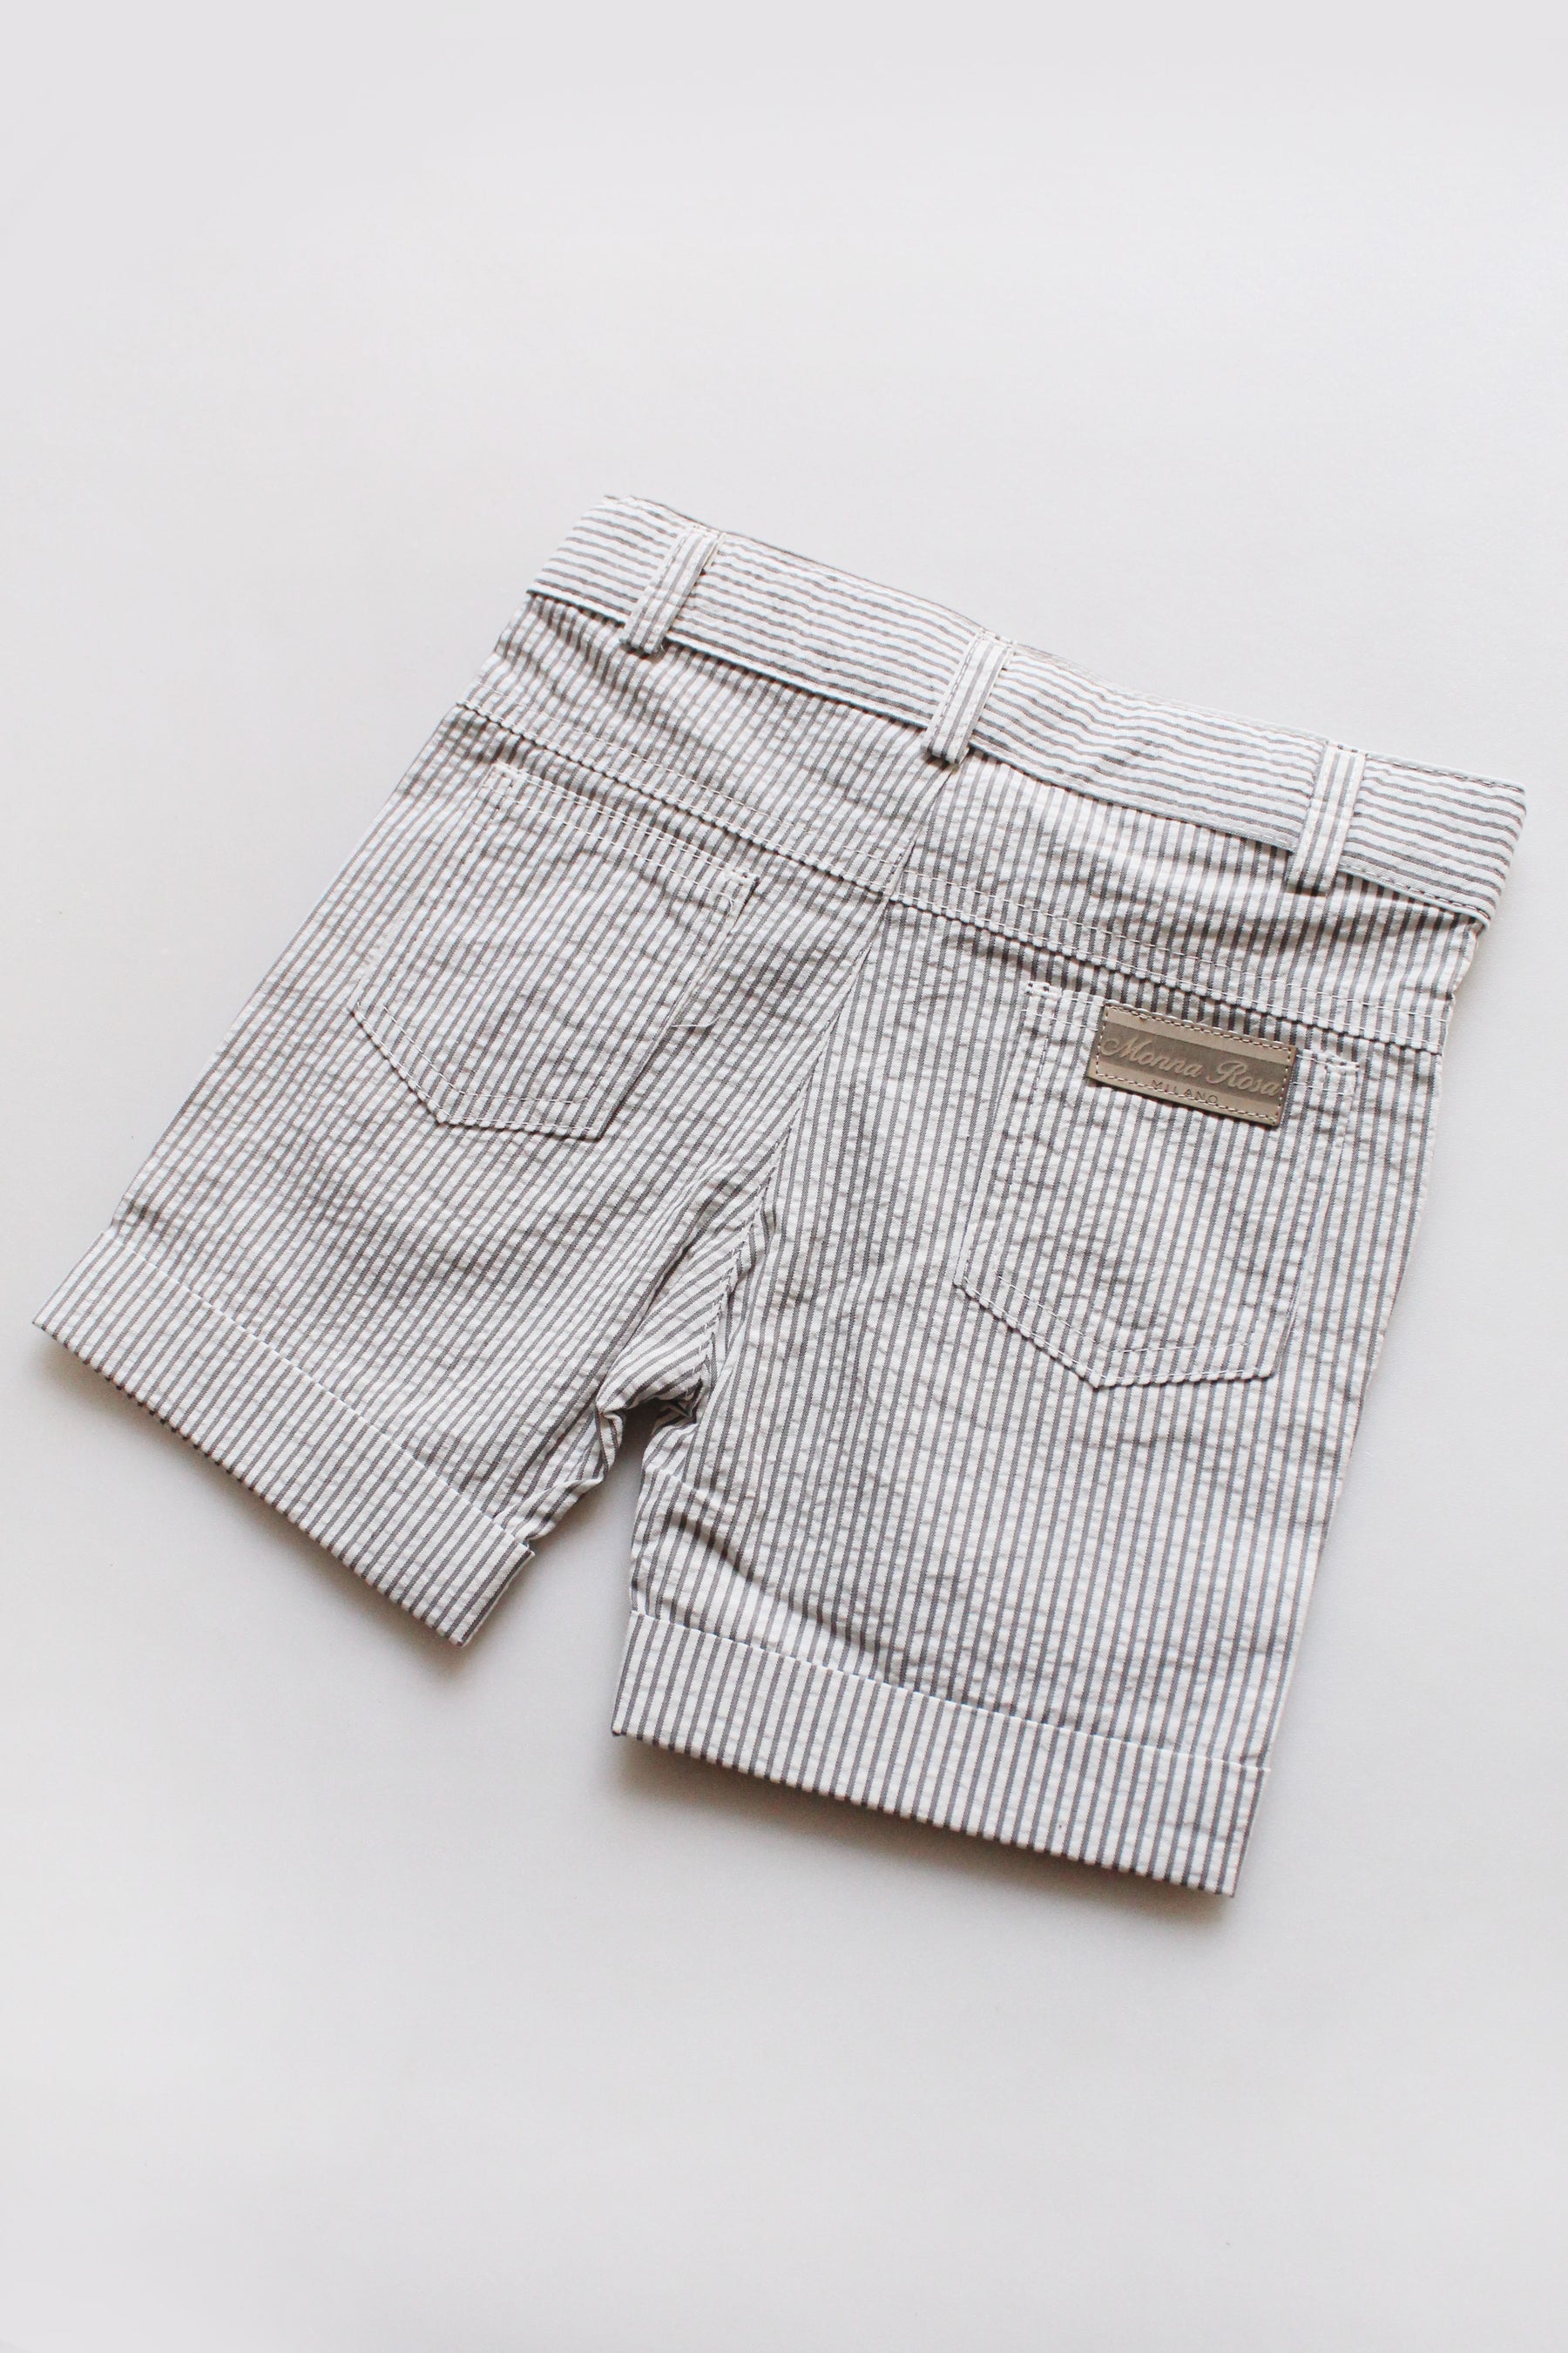 White Striped Shorts